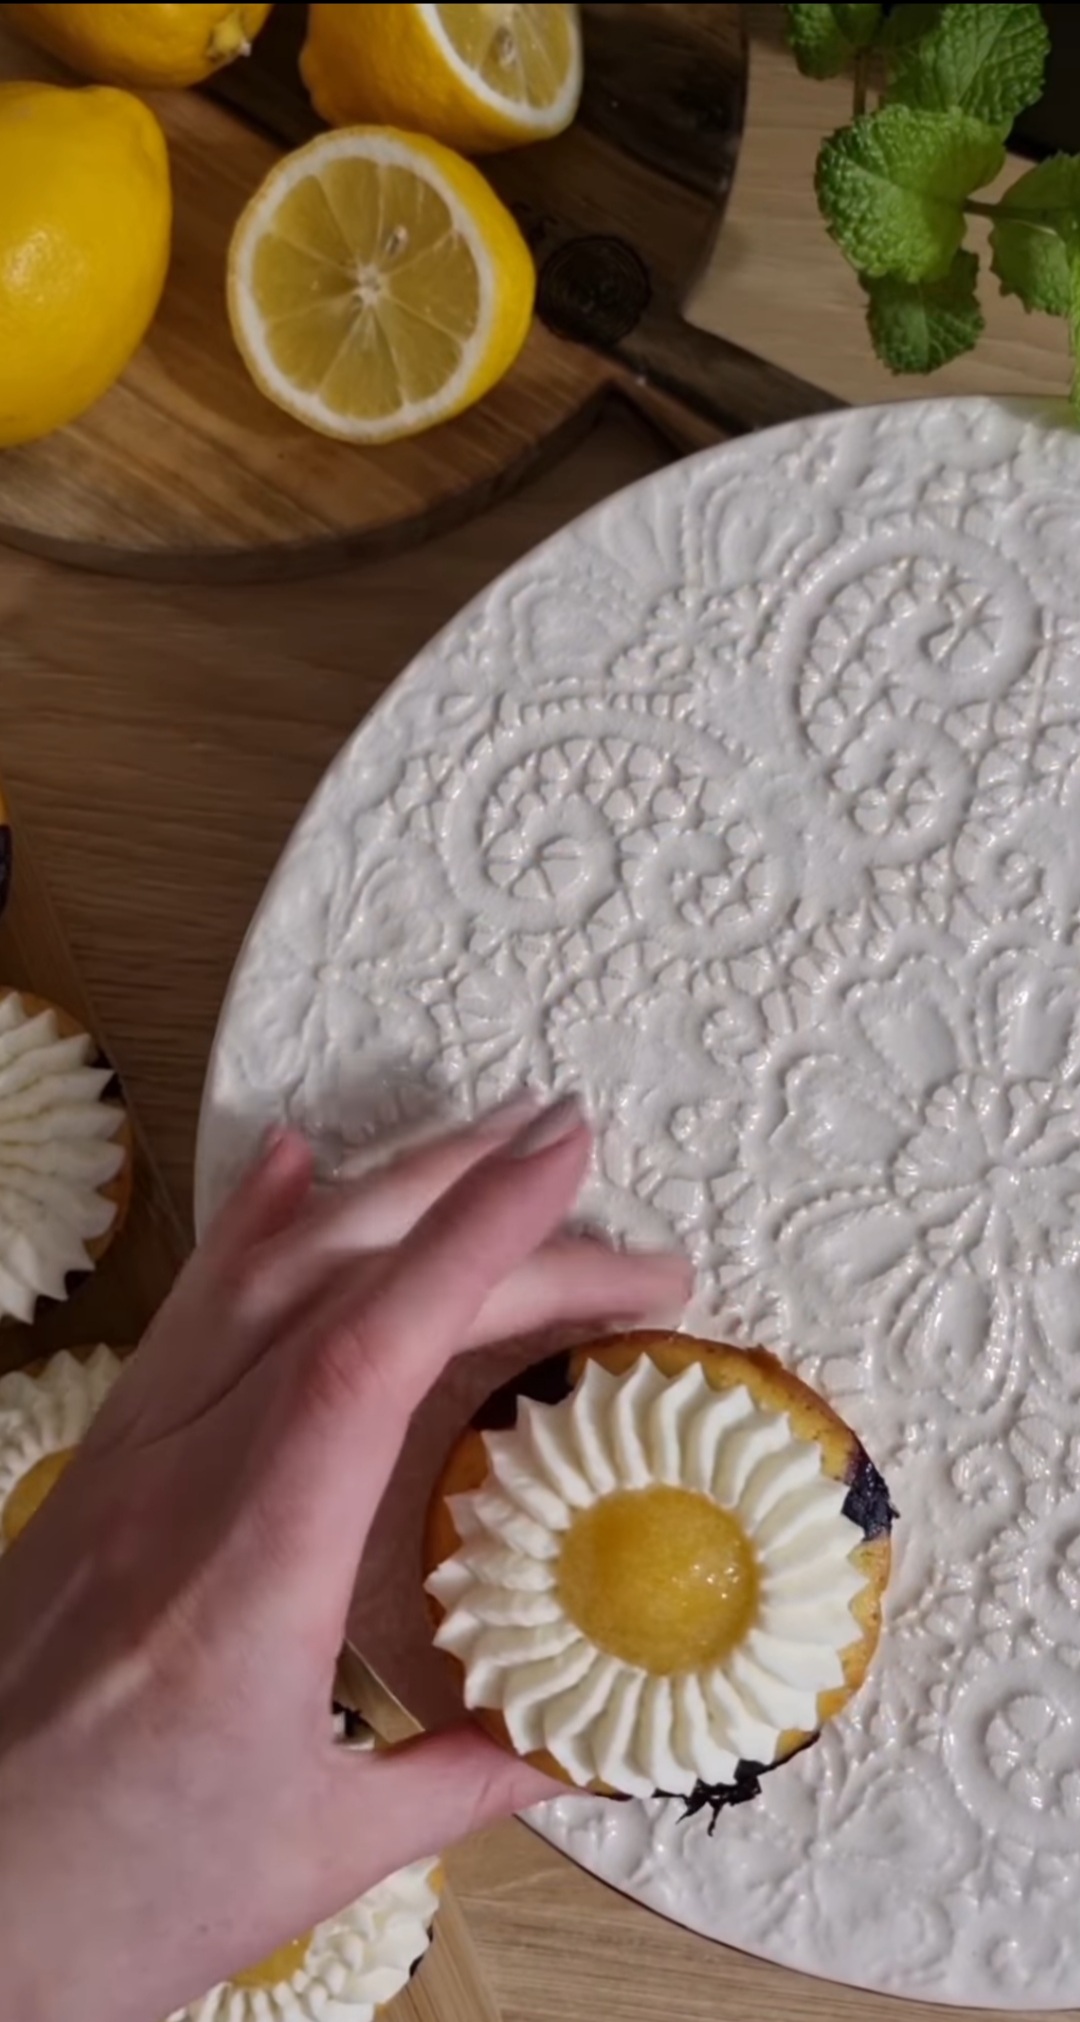 Food influencer bira: Iva Horvat otkriva recept za limun muffine s kremom od bijele čokolade i marelice